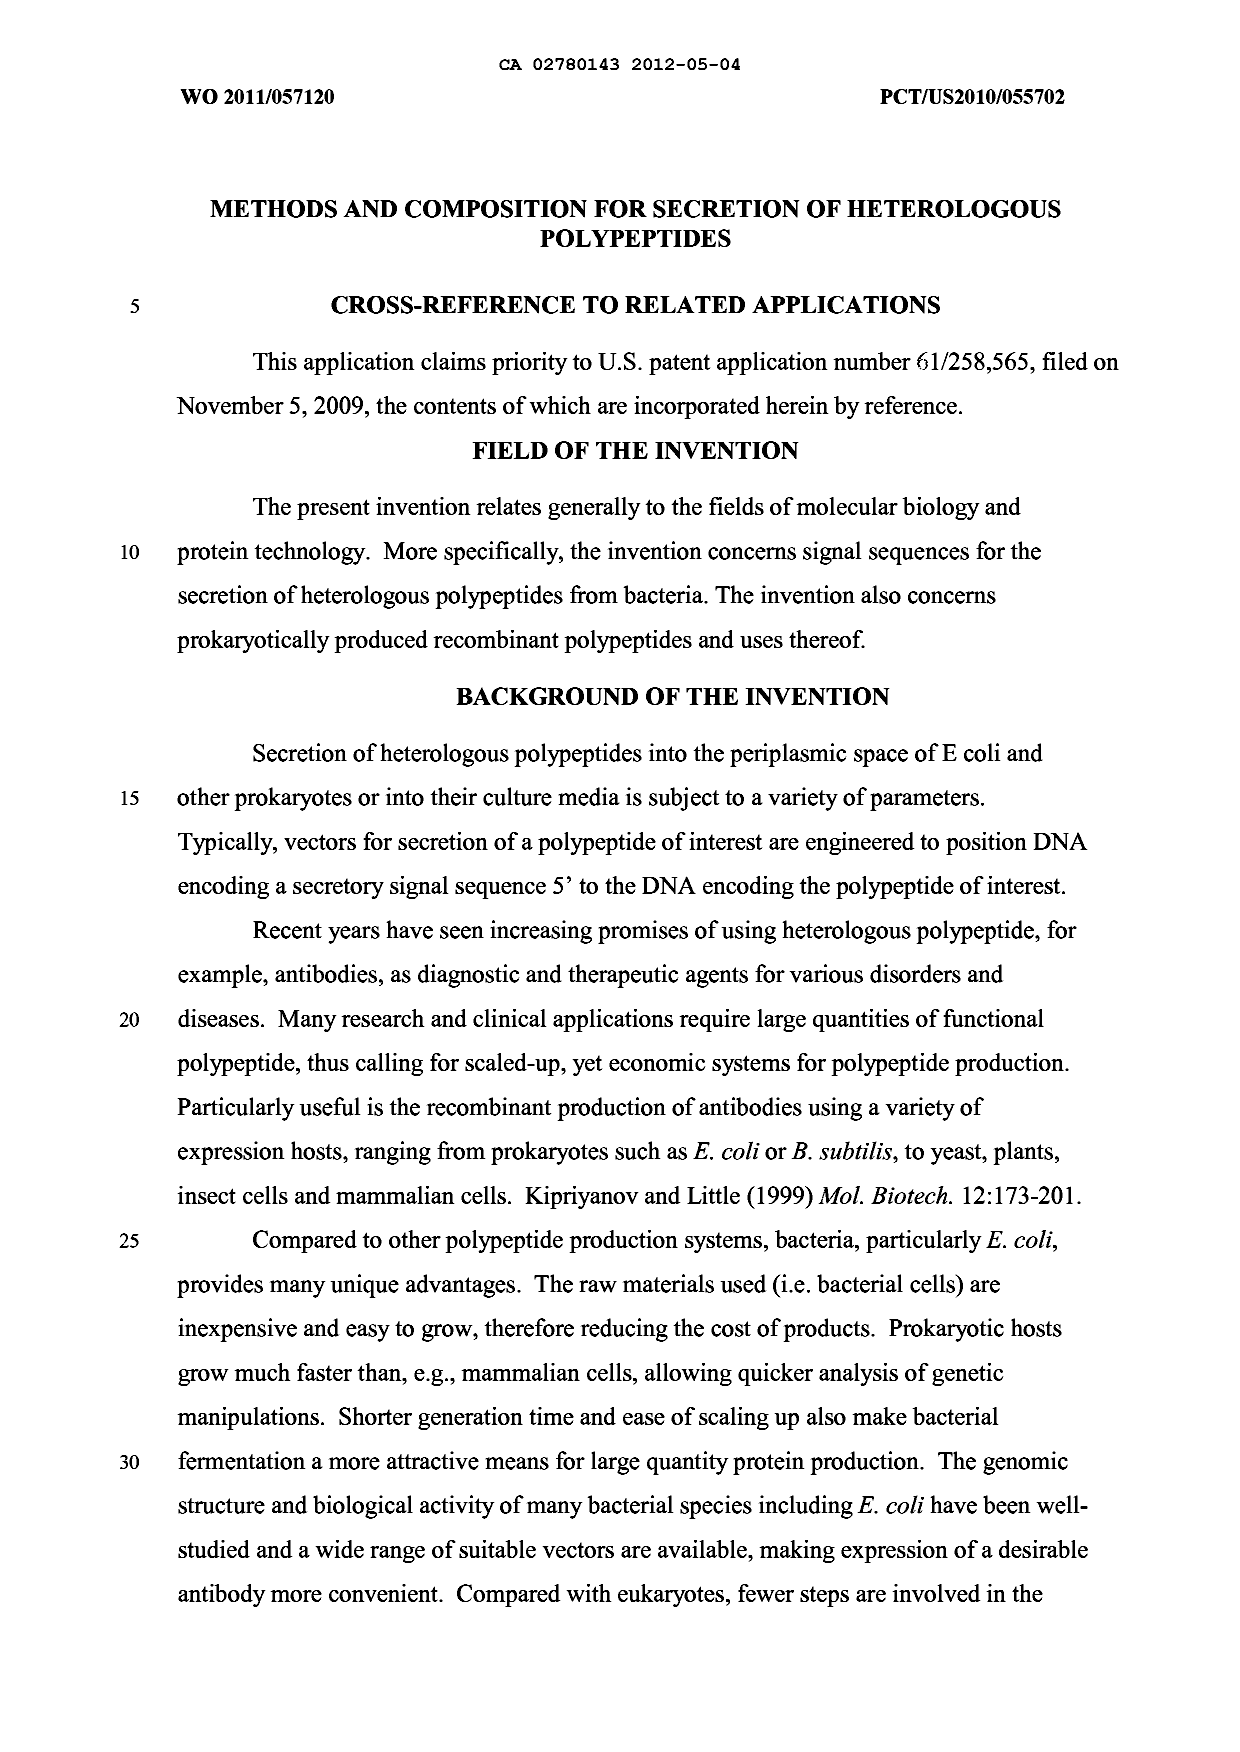 Canadian Patent Document 2780143. Description 20120504. Image 1 of 124